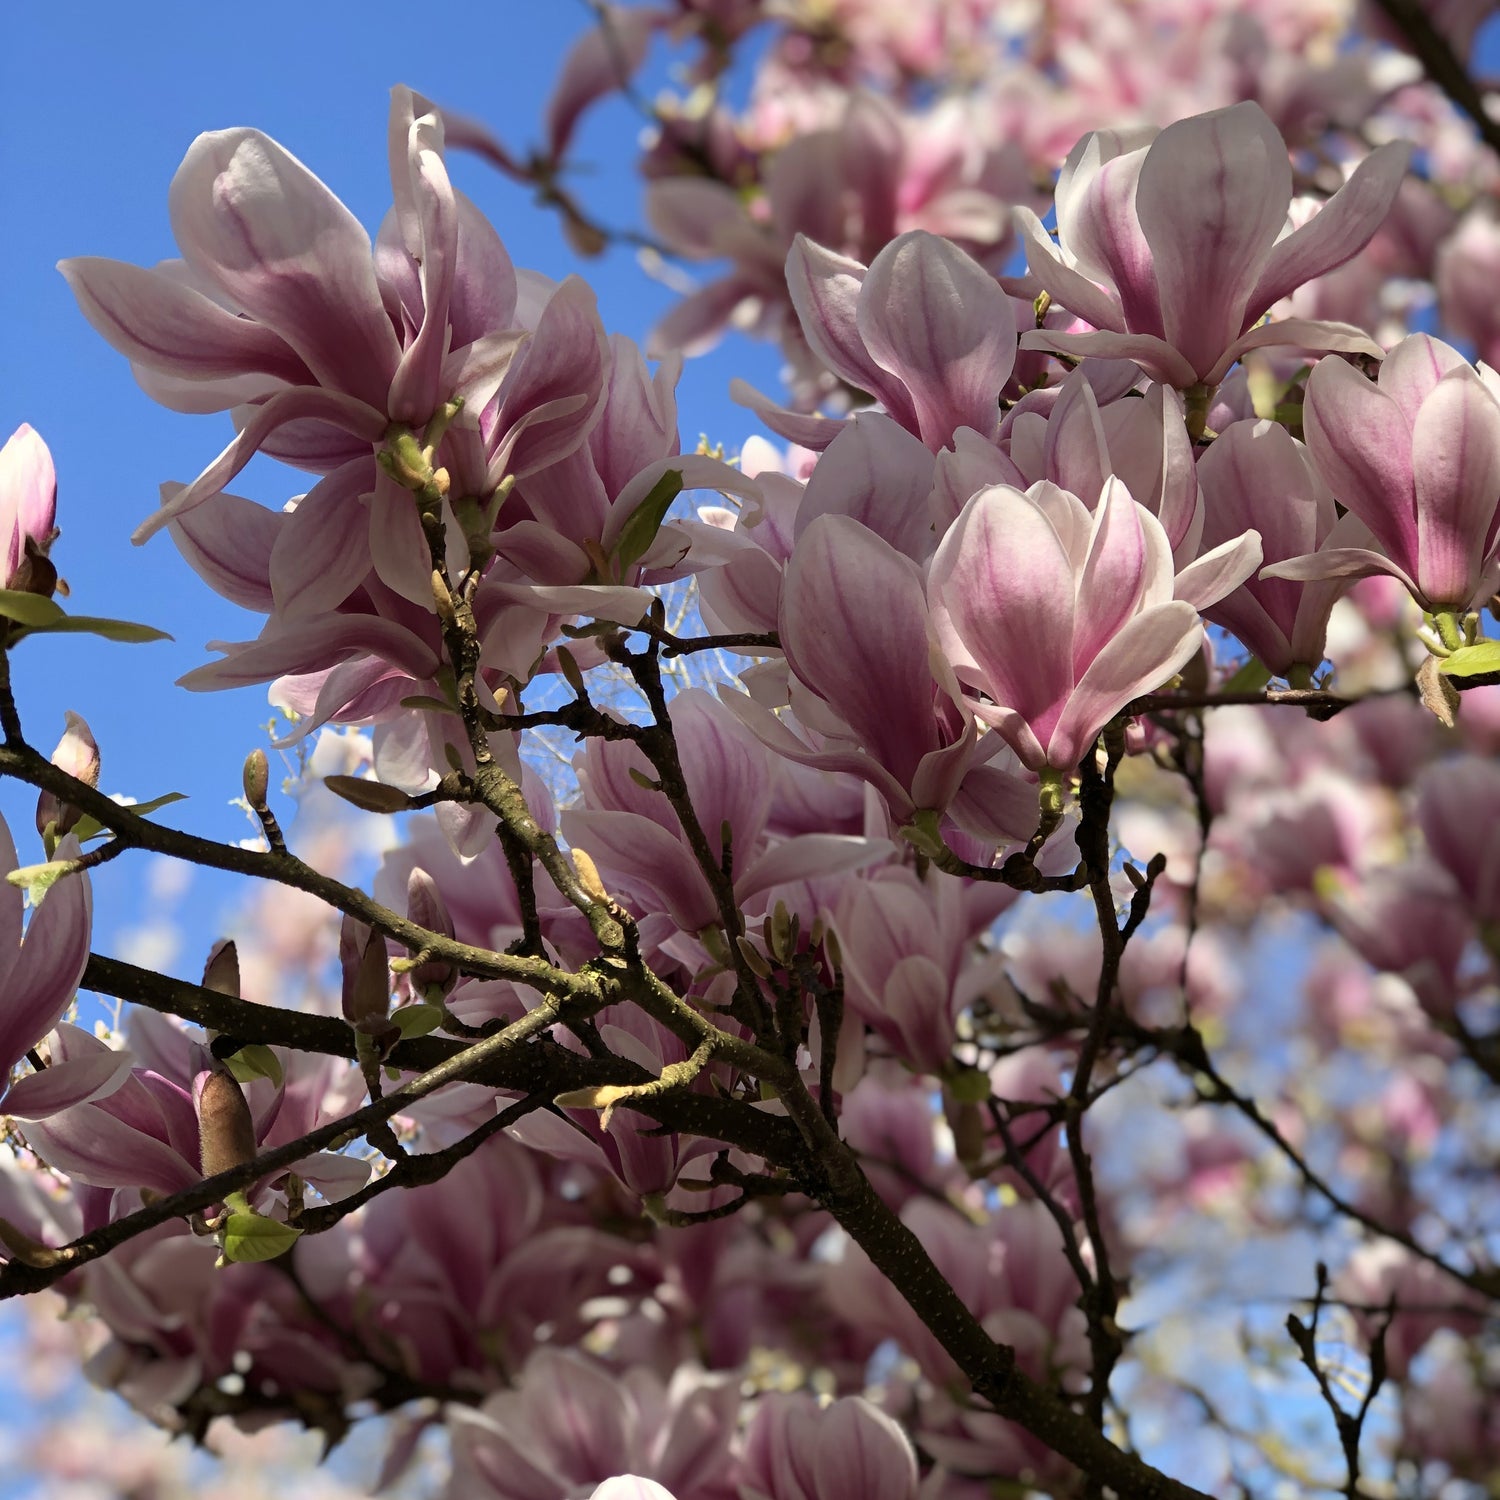 Magnolie – Magnolia